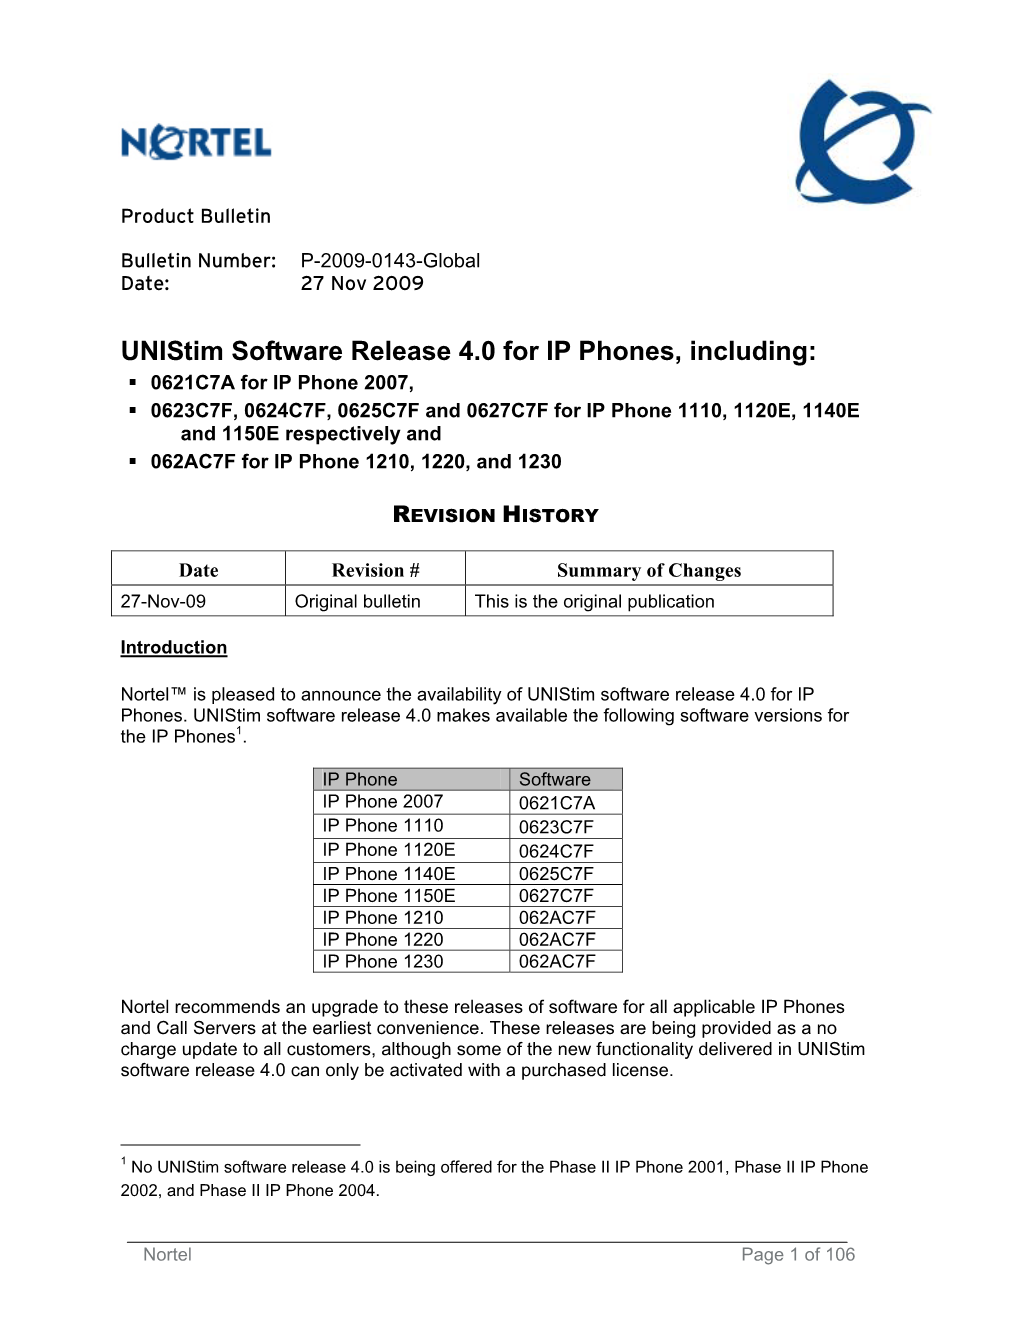 Unistim Software Release 4.0 for IP Phones, Including